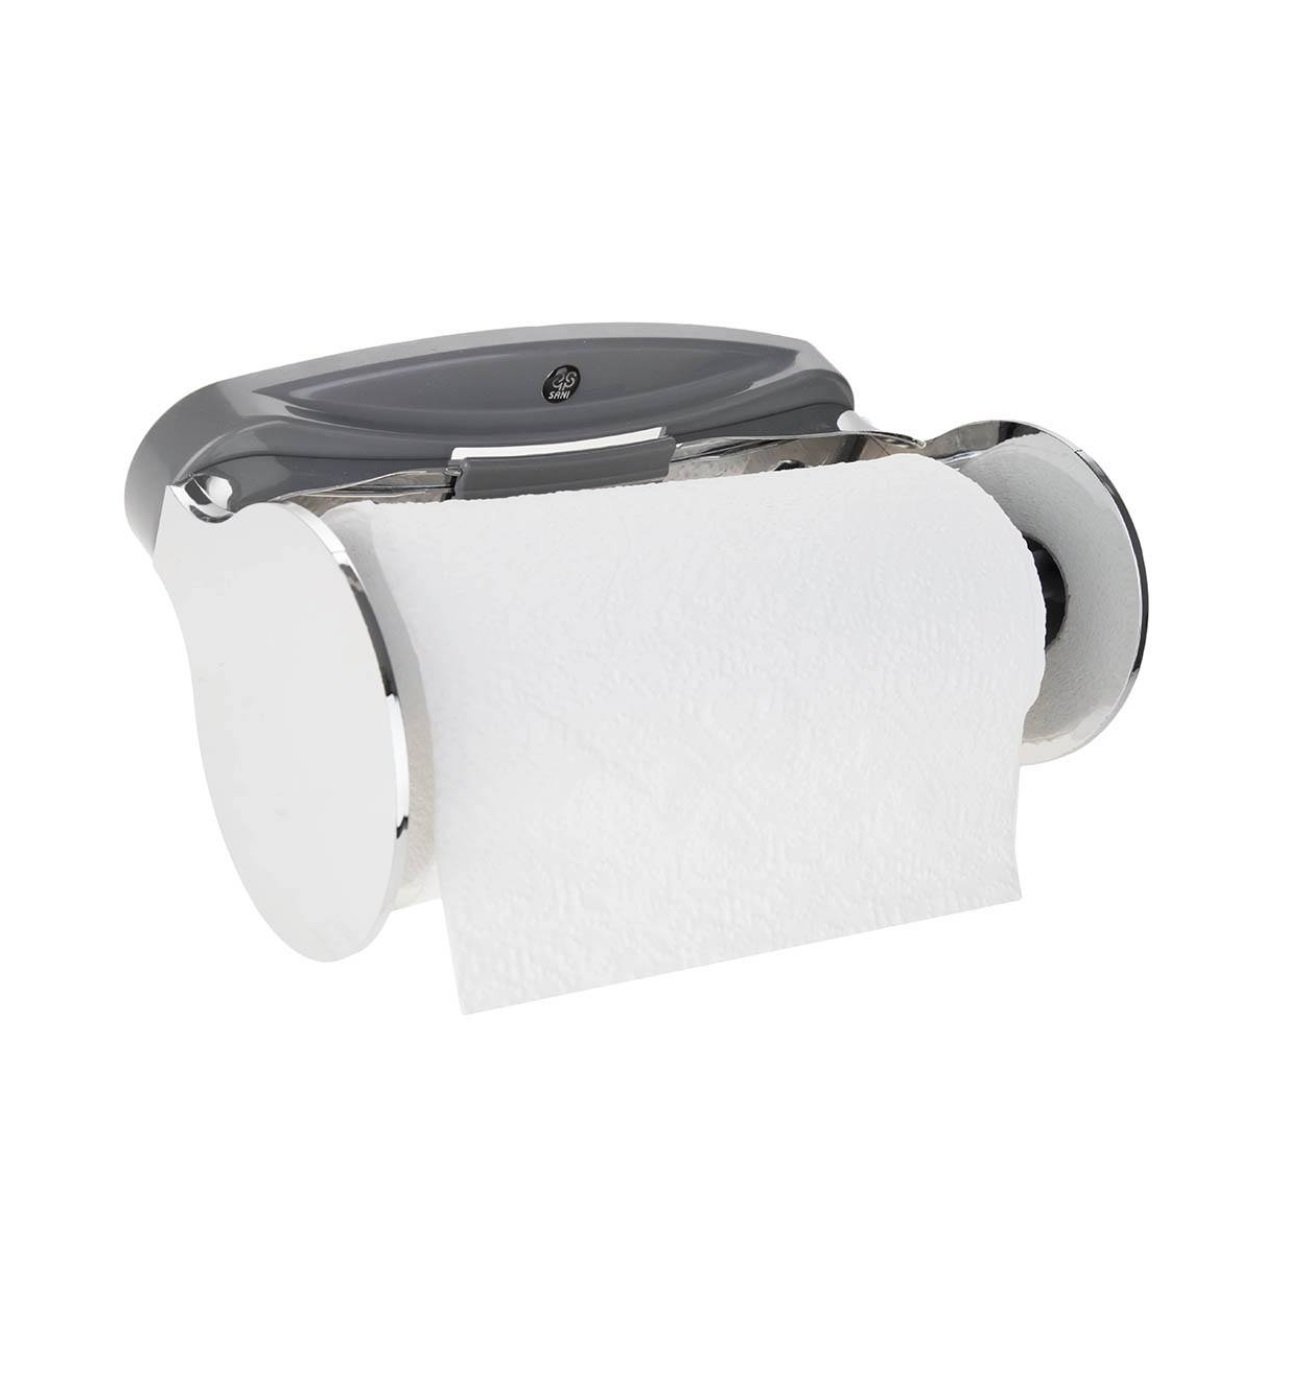 نگهدارنده دستمال کاغذی توالت سنی پلاستیک مدل RAYKA